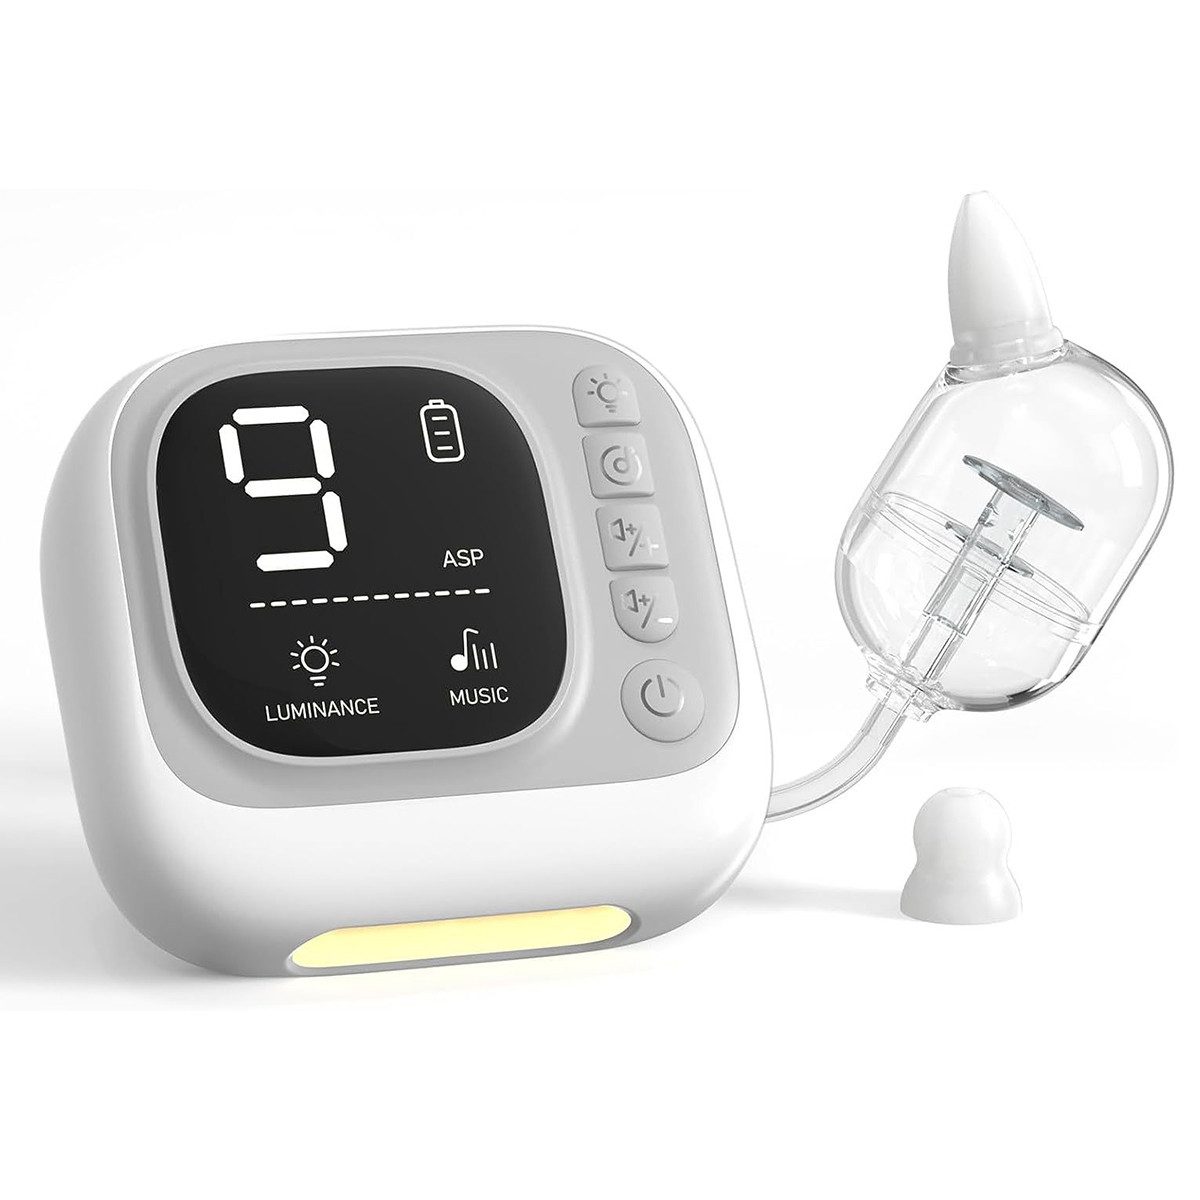 Novzep Nasensauger 9-stufiger elektrischer Baby Nasenreiniger mit 3-Silikondüsen